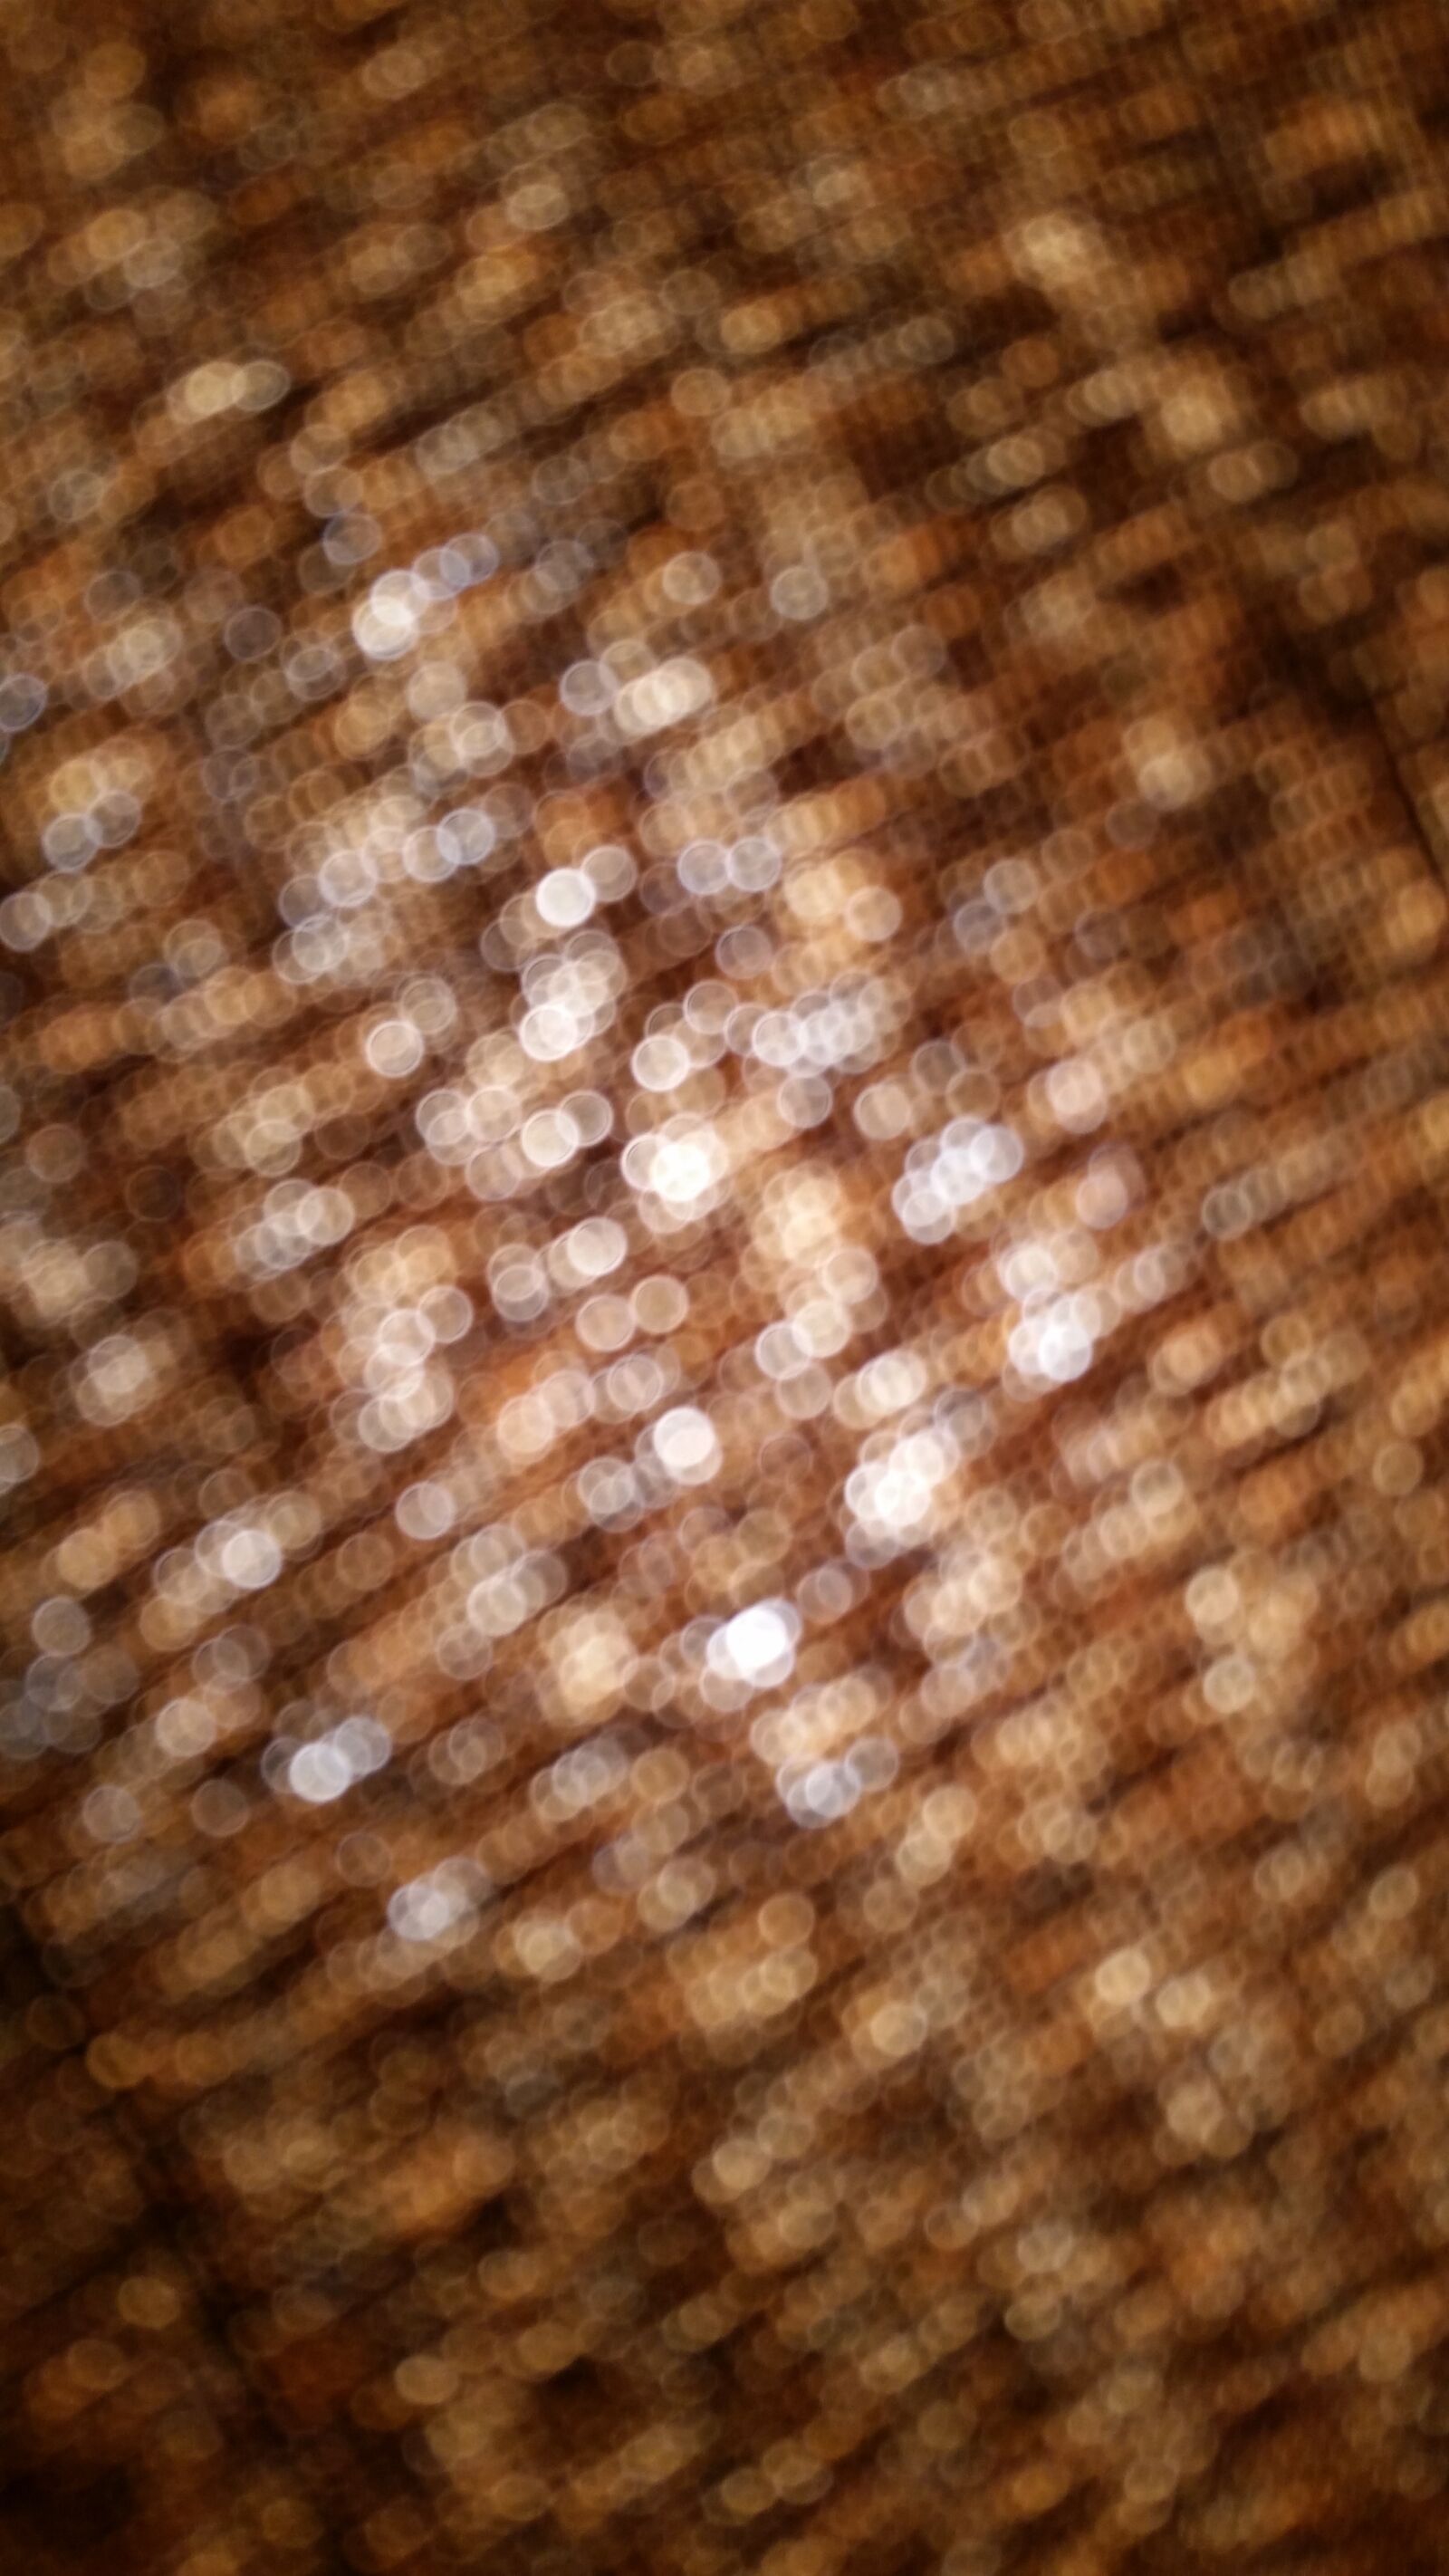 Samsung Galaxy S5 sample photo. Brown, circle, dots, shimmer photography